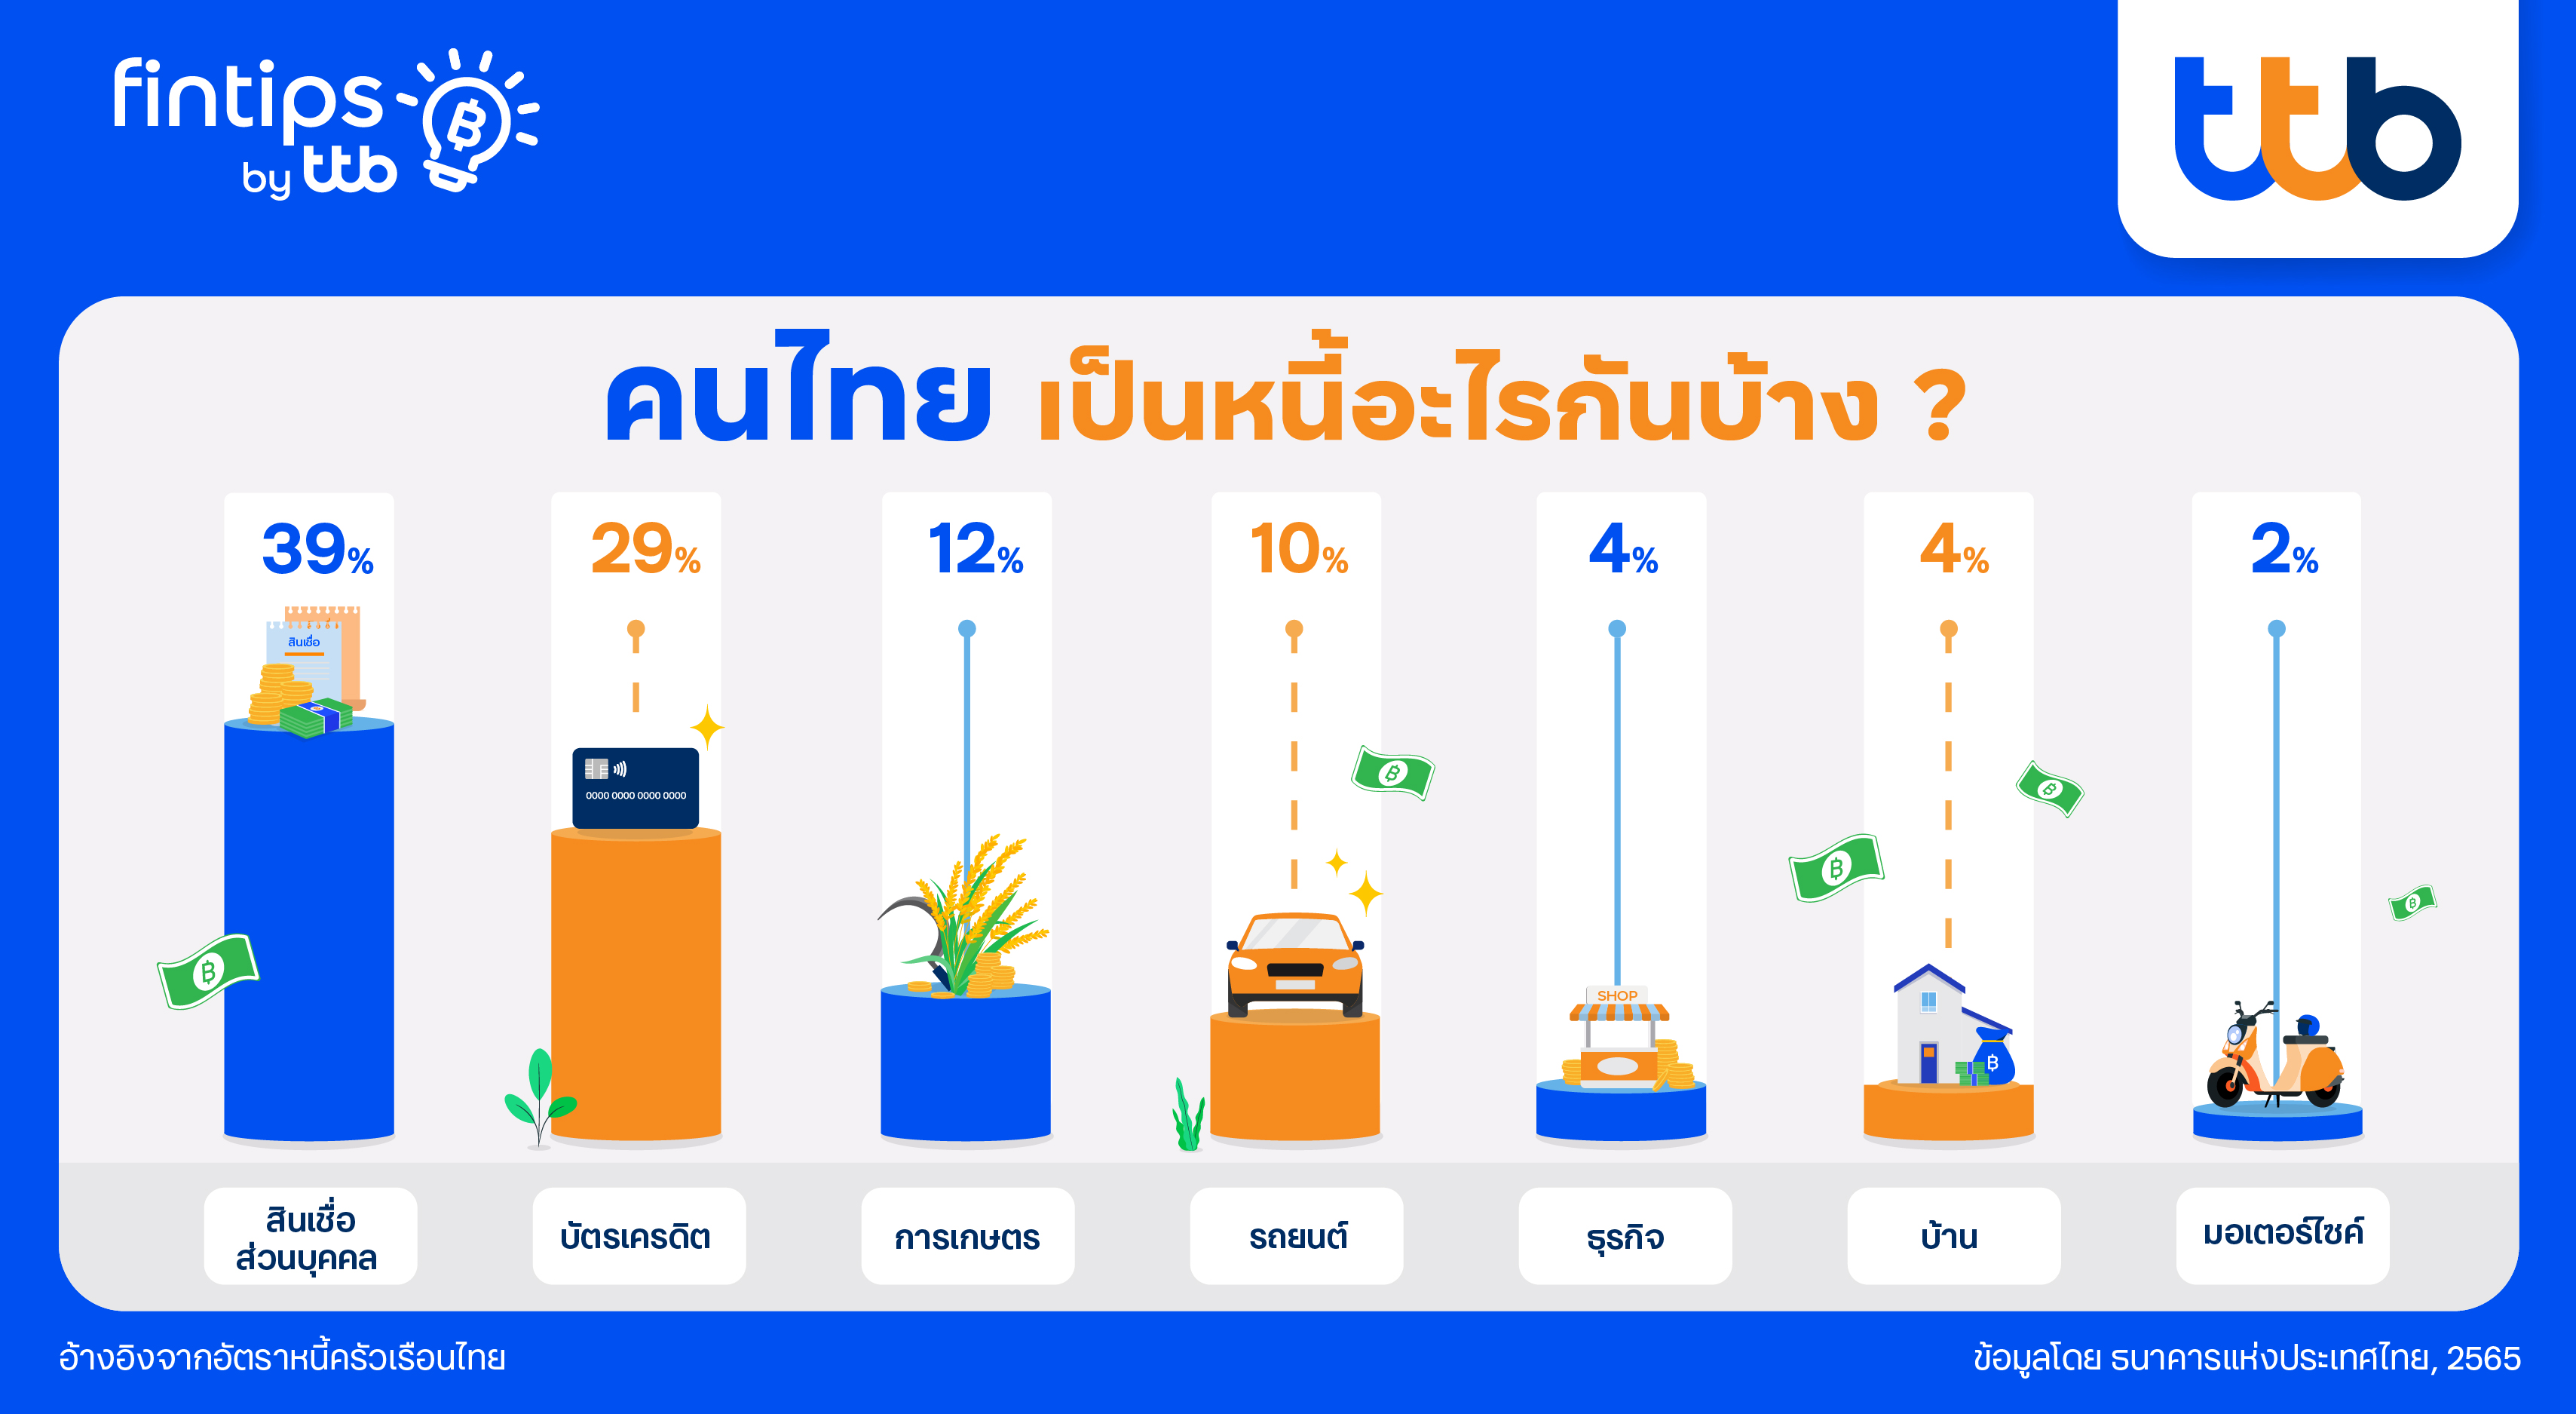 fintips by ttb พาสำรวจ 7 อันดับหนี้ของคนไทย พร้อมแผนรับมือที่ทำตามได้จริง